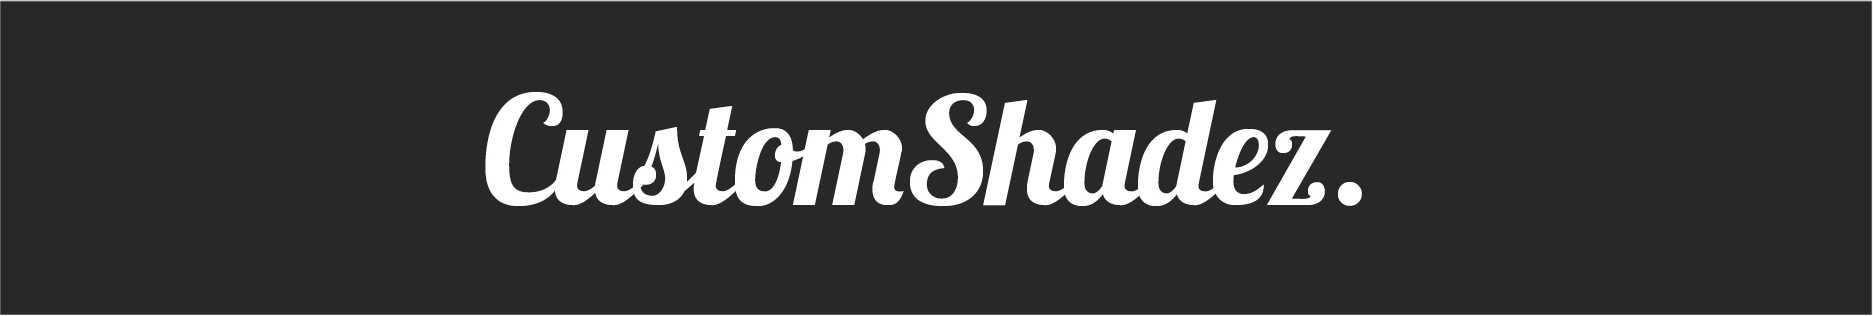 Custom Shadez logo